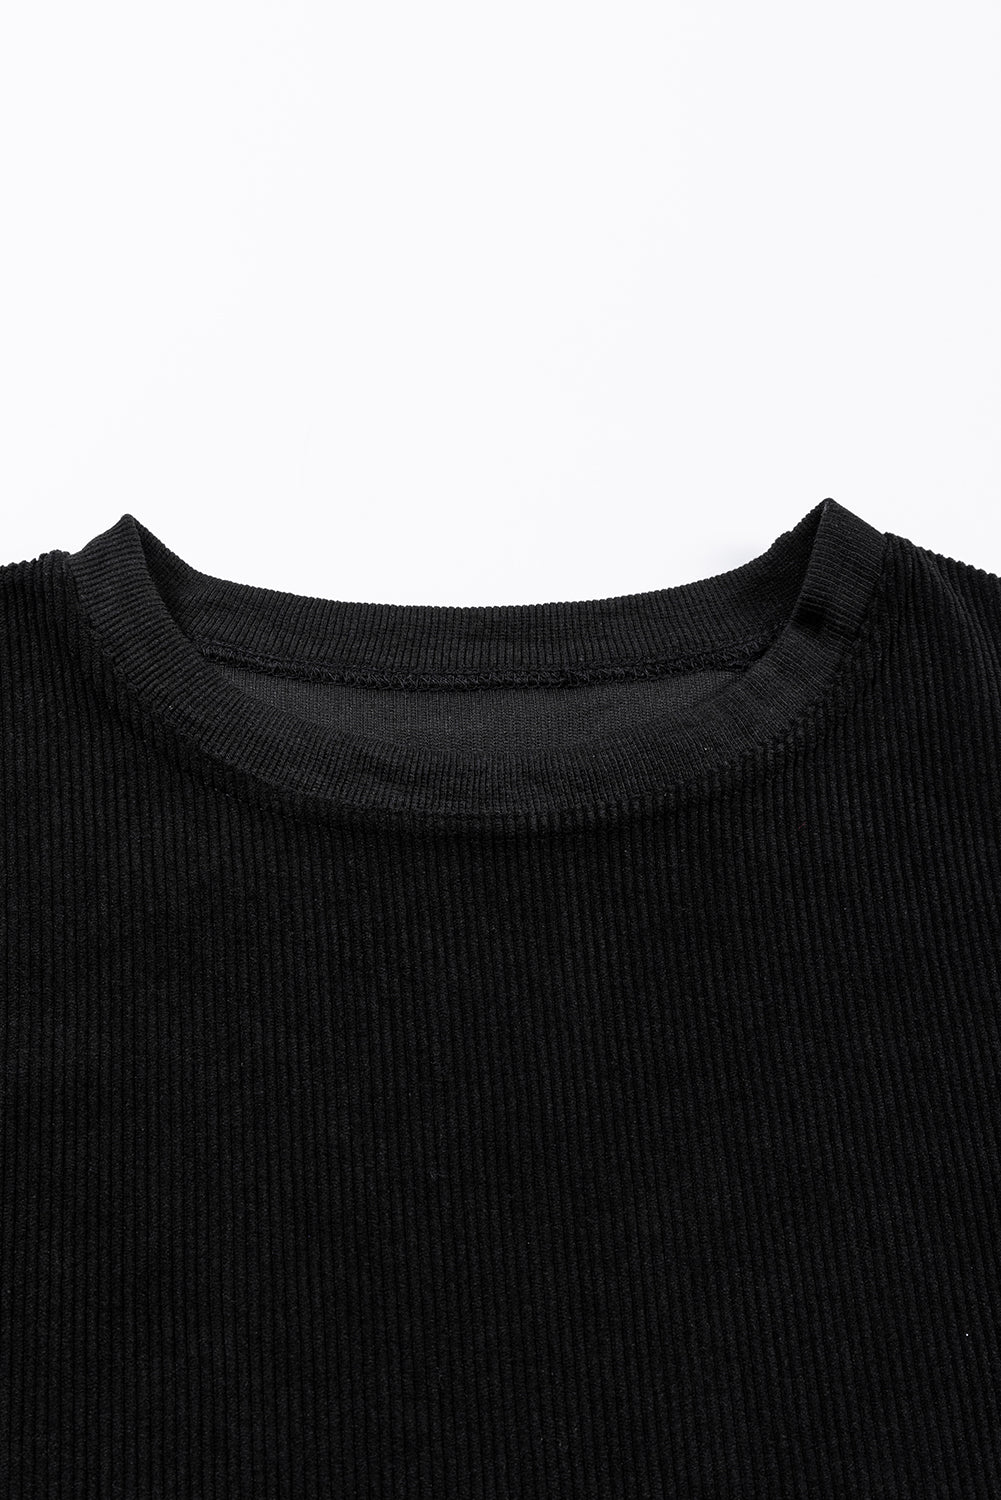 Schwarzes, geripptes, schnurgebundenes, übergroßes Sweatshirt